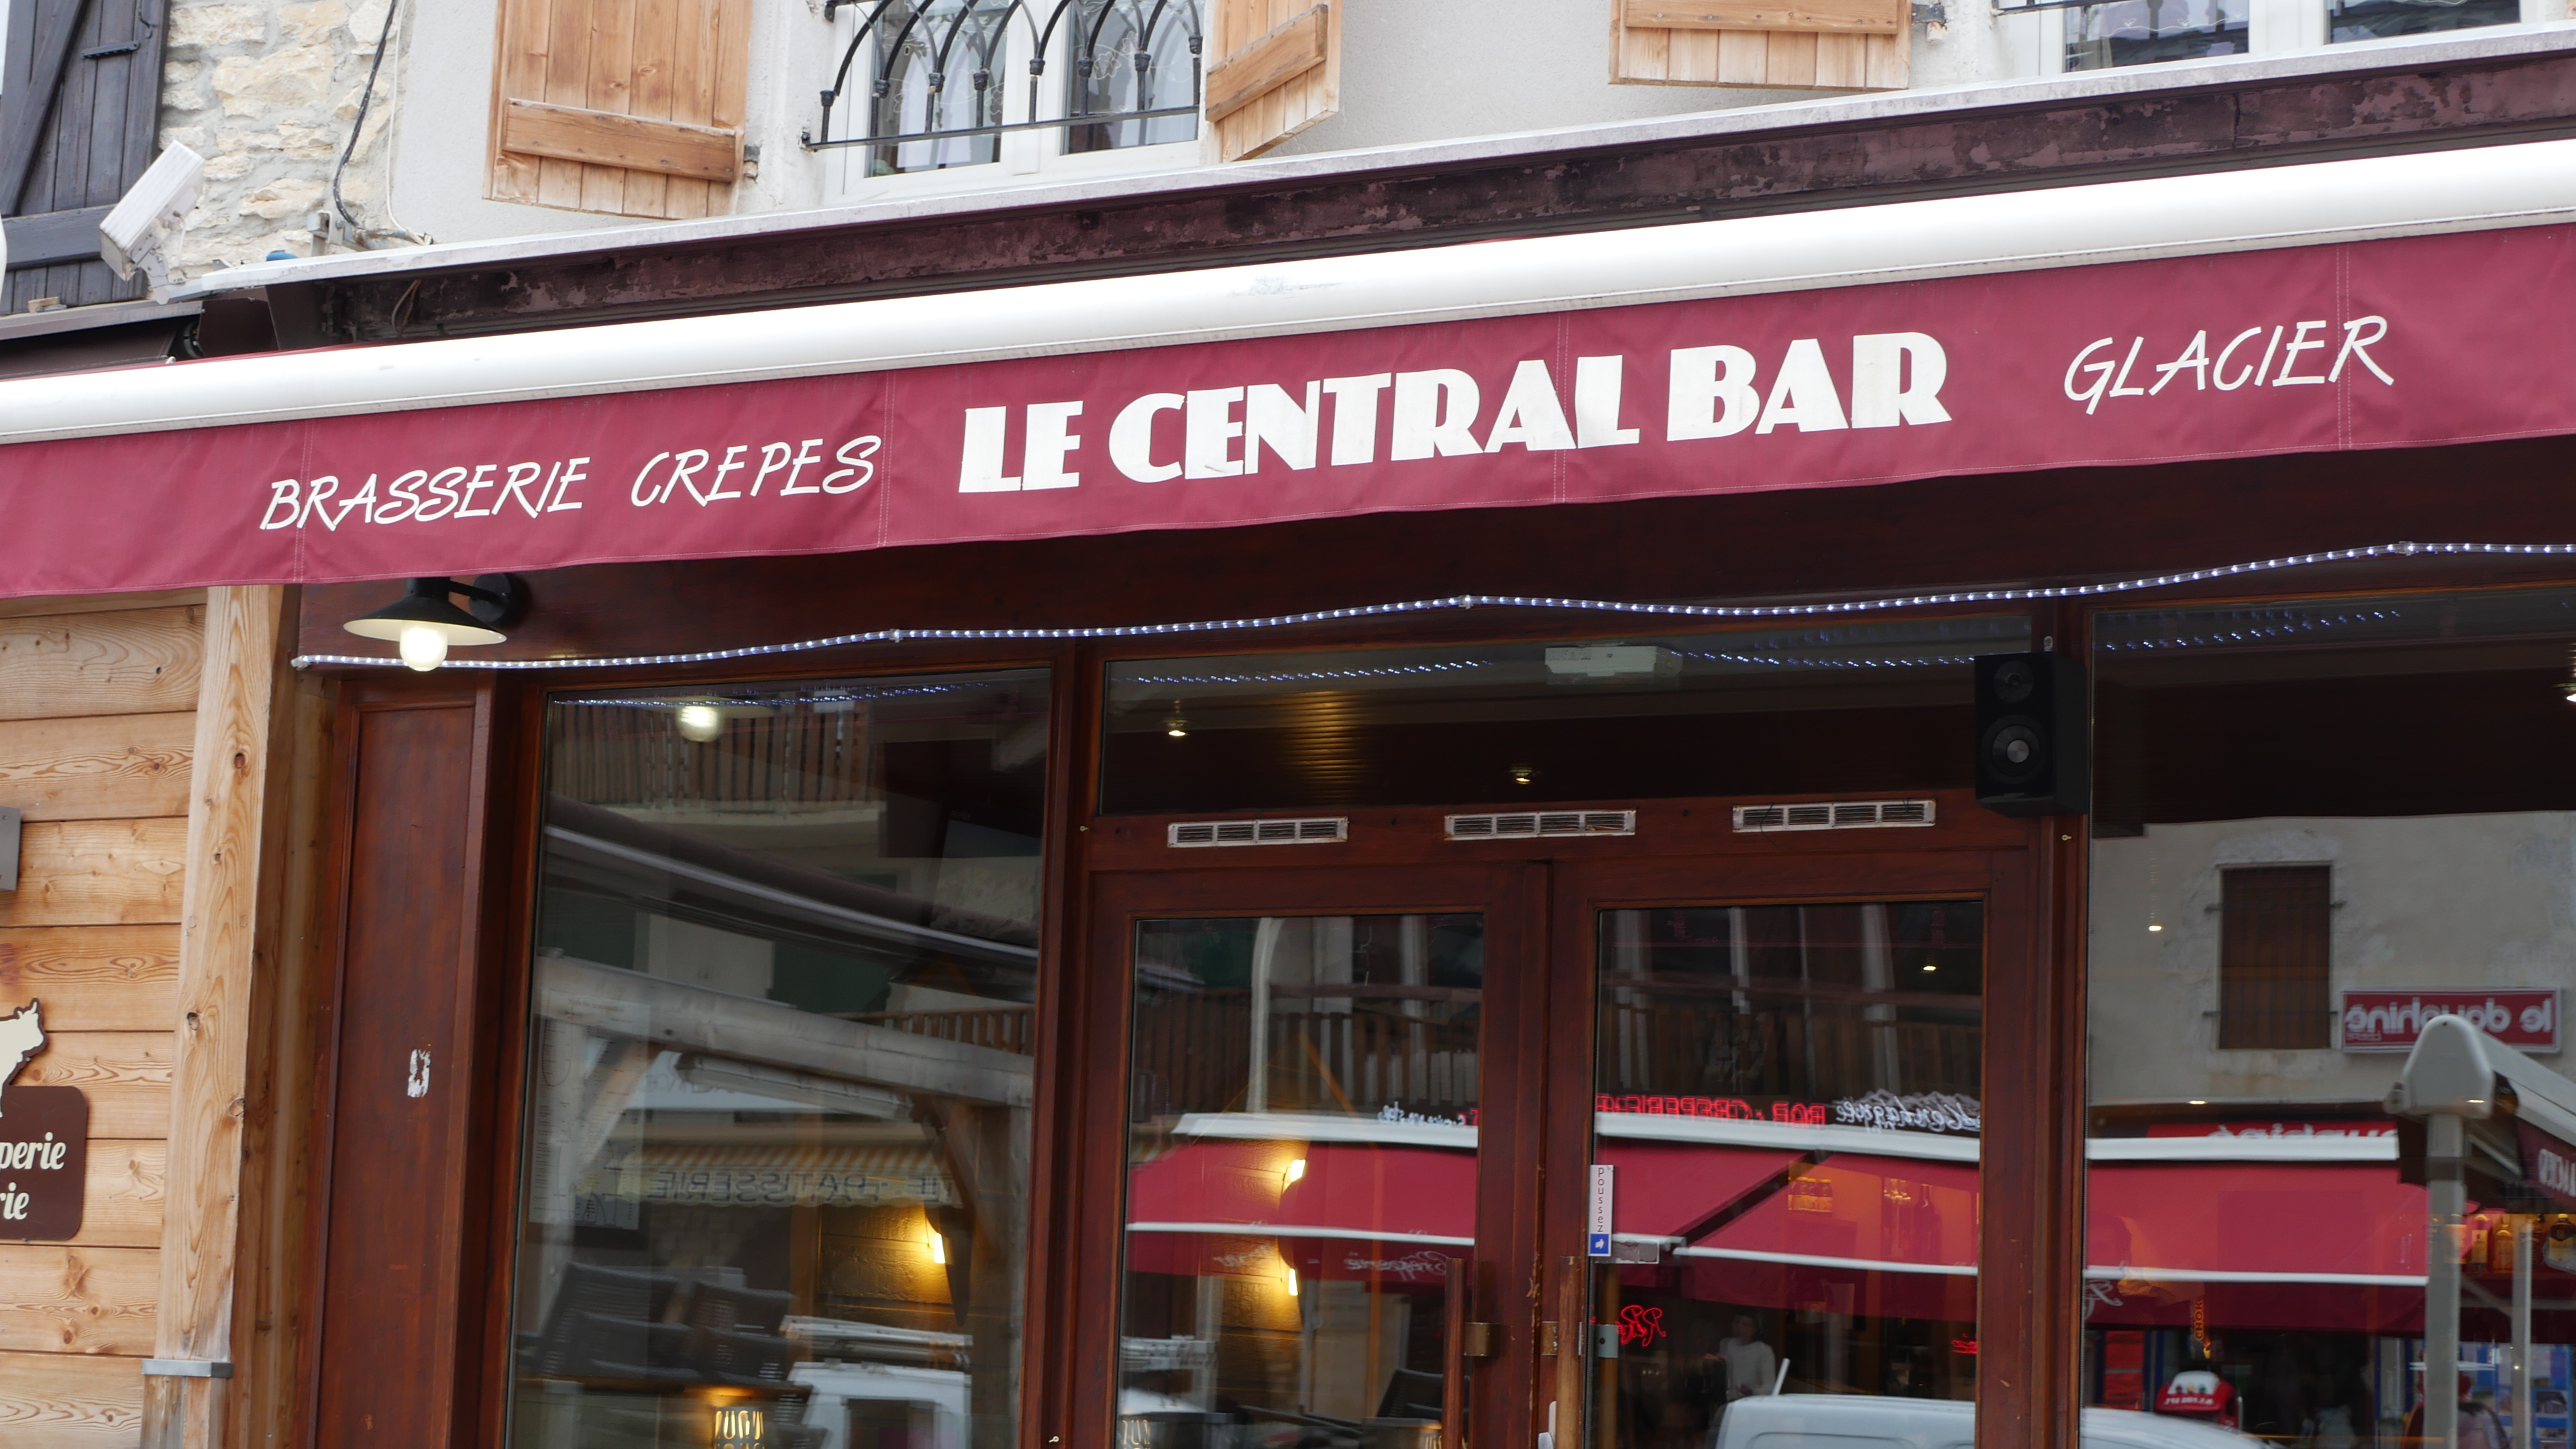 Le Central bar